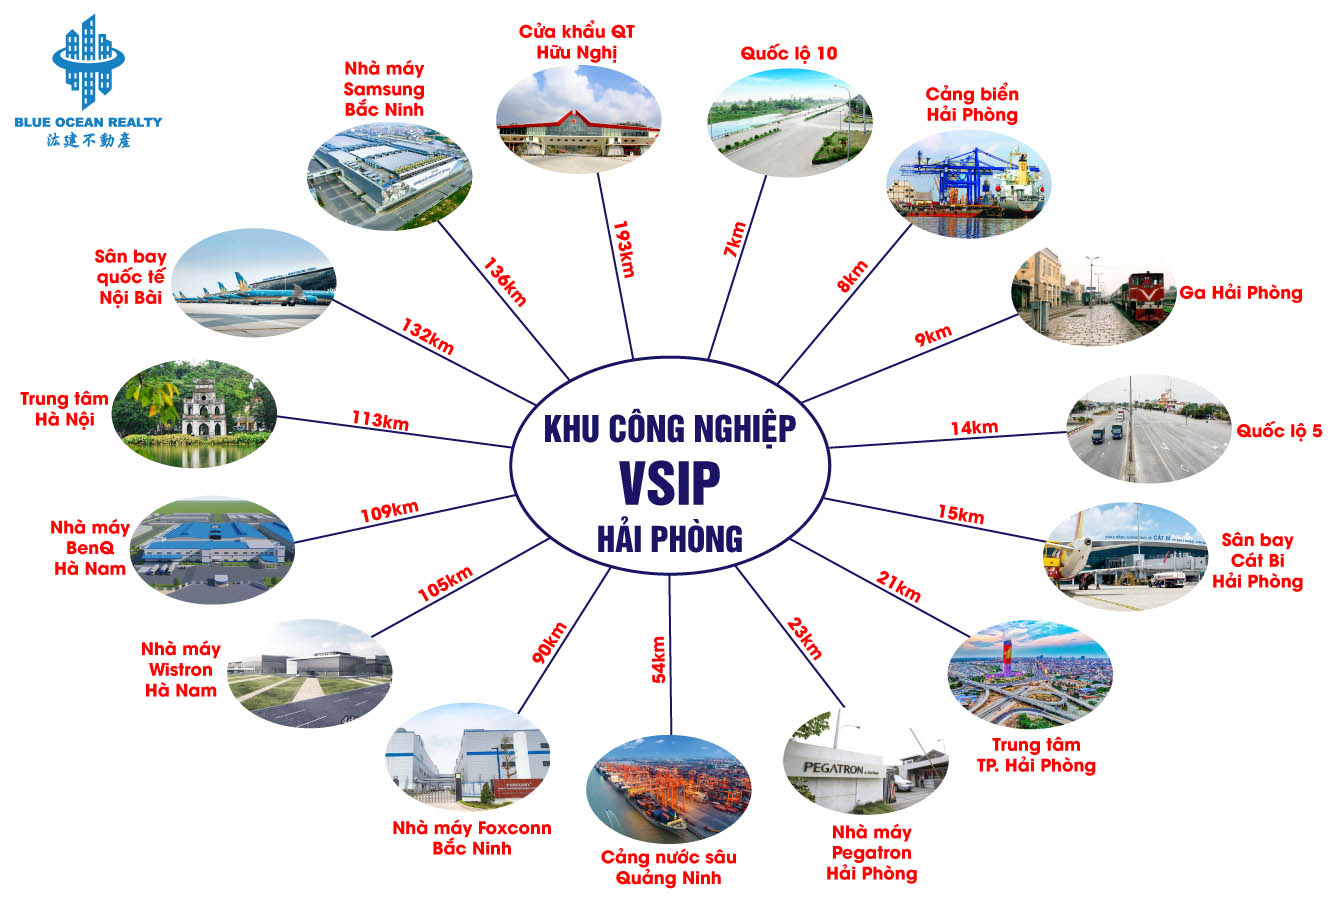 Khu công nghiệp (KCN) VSIP-Hải Phòng